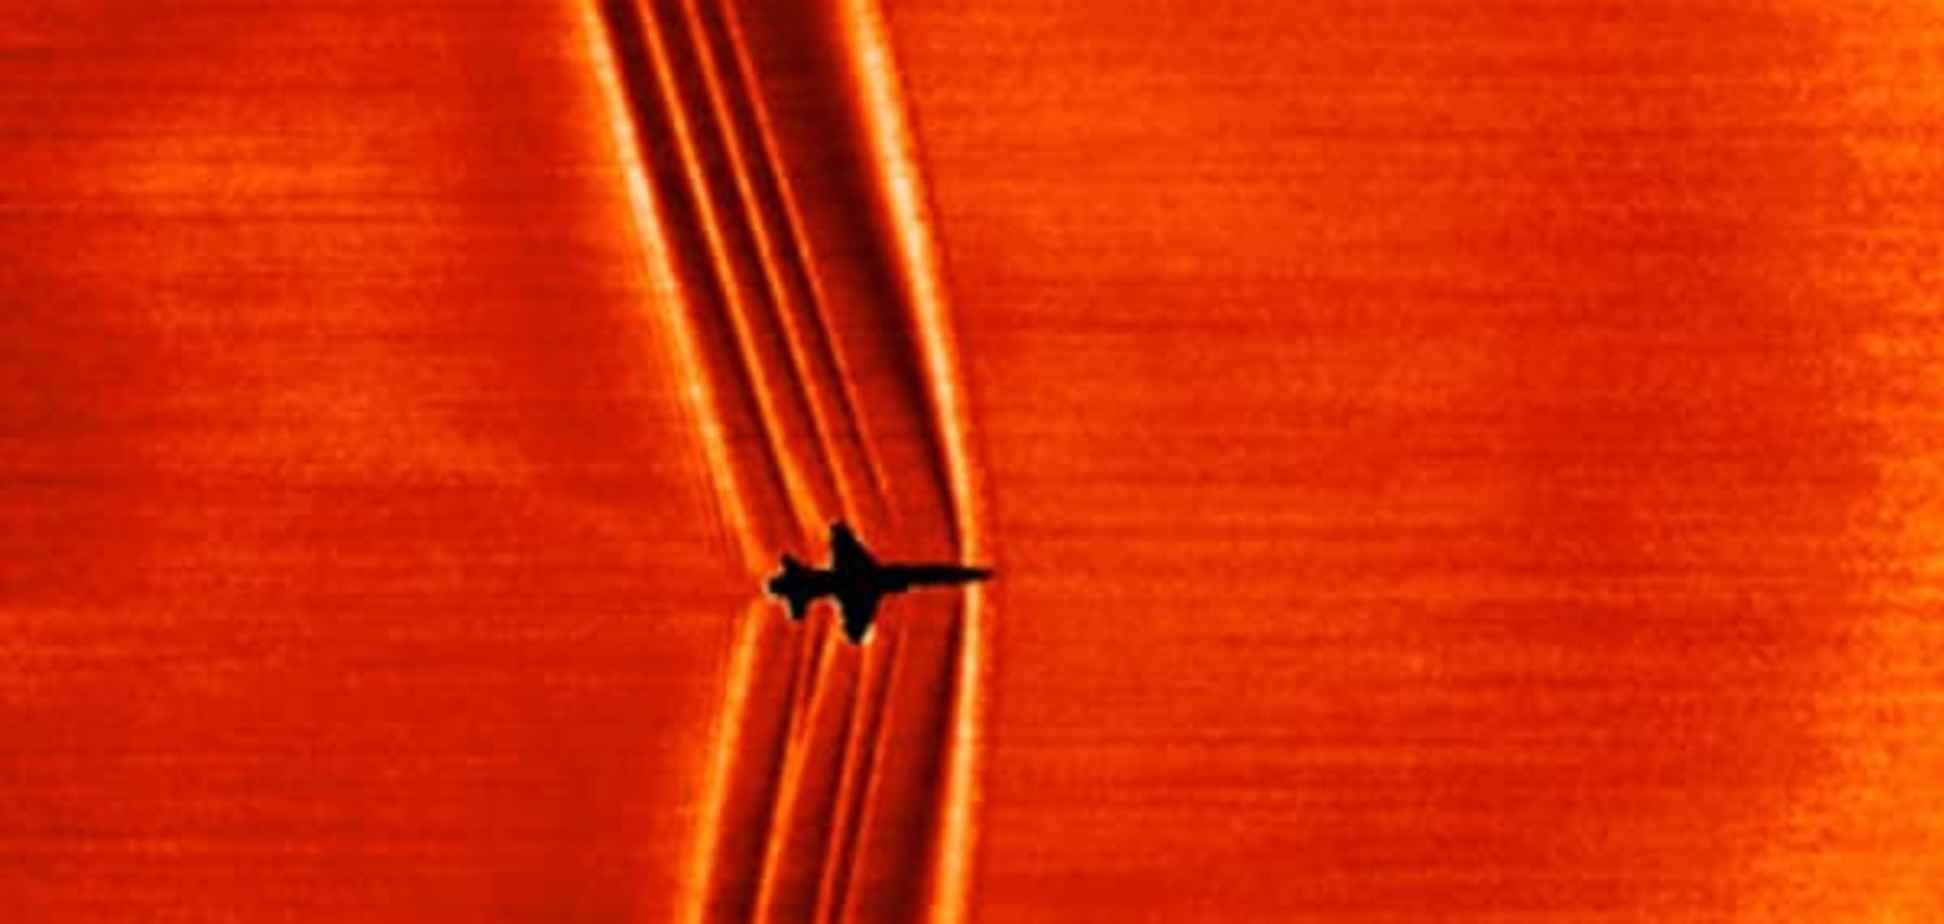 Фантастика! NASA сделала уникальное фото ударной звуковой волны на фоне Солнца. Фото и видеофакт